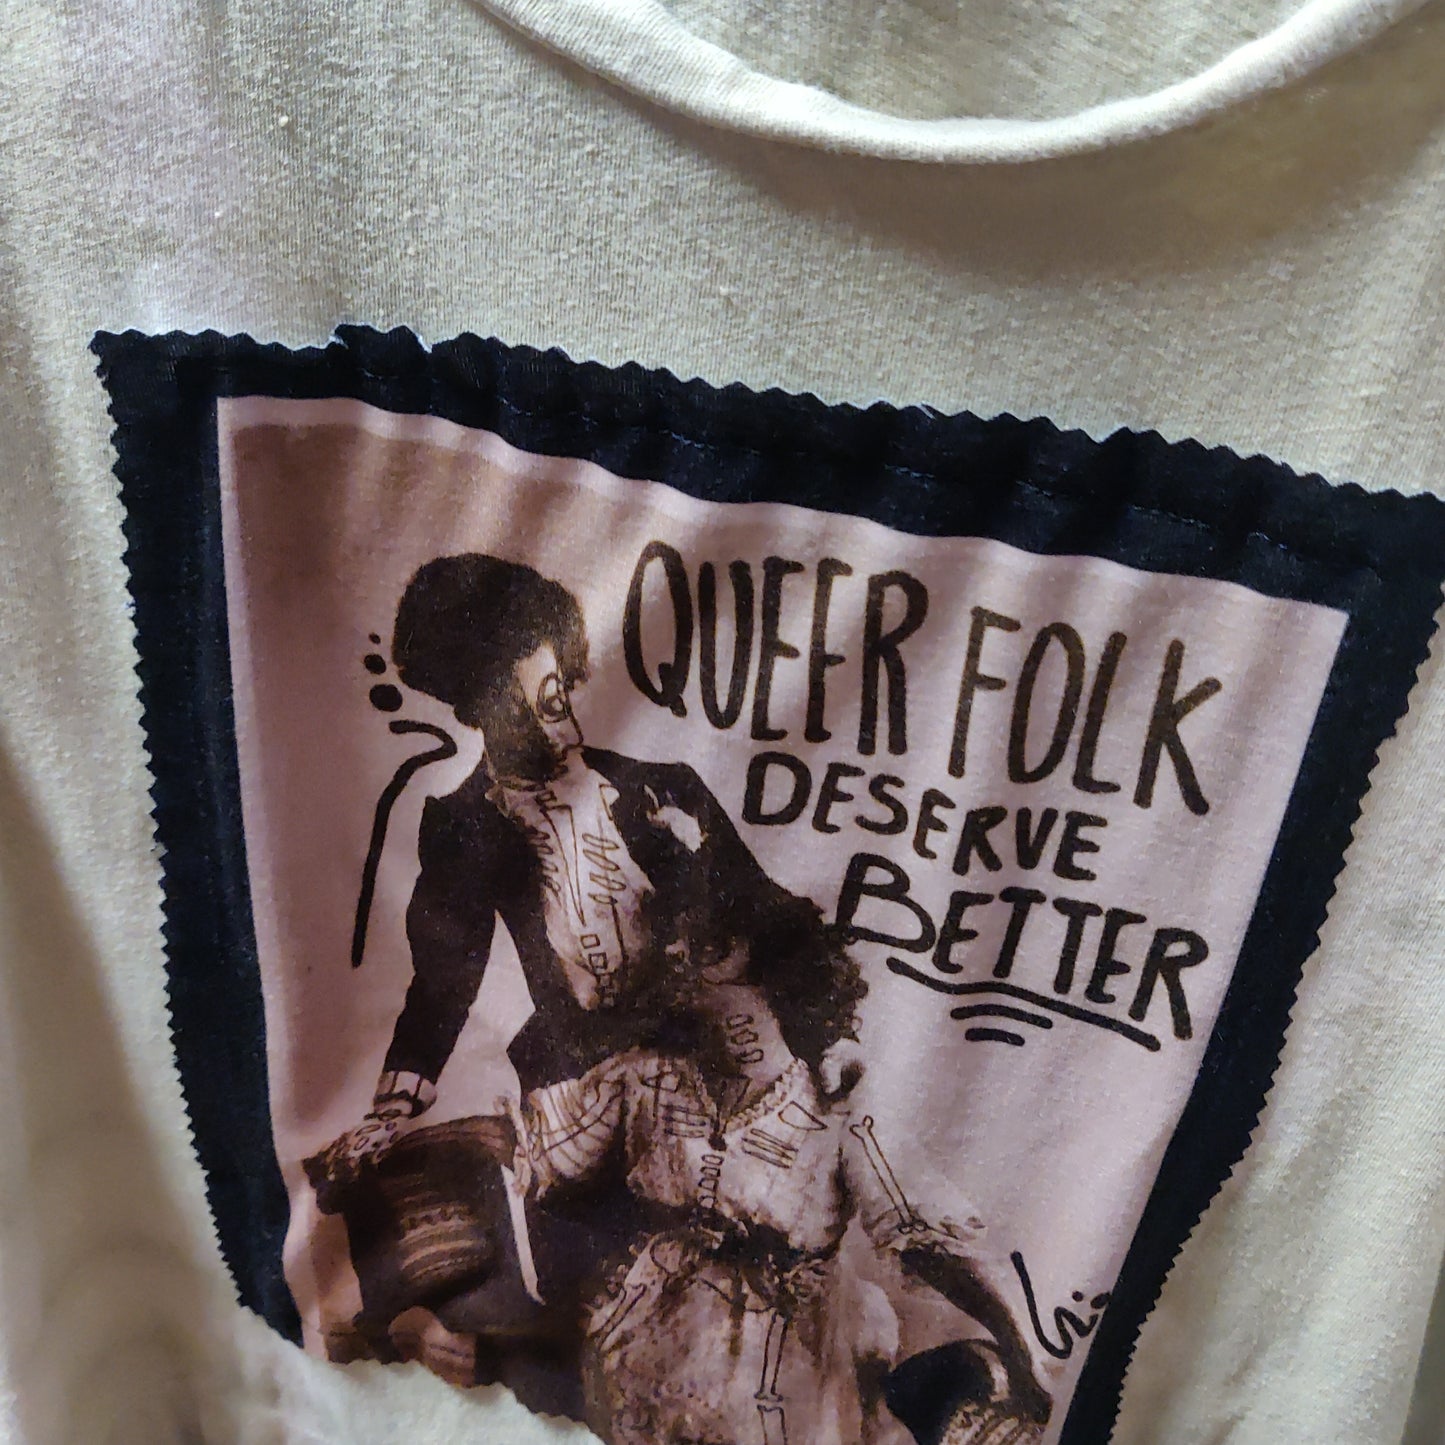 Queer Folk Deserve Better 3/4 Length Sleeve T-SHIRT w/ Original Patch by Skullduggery Studio